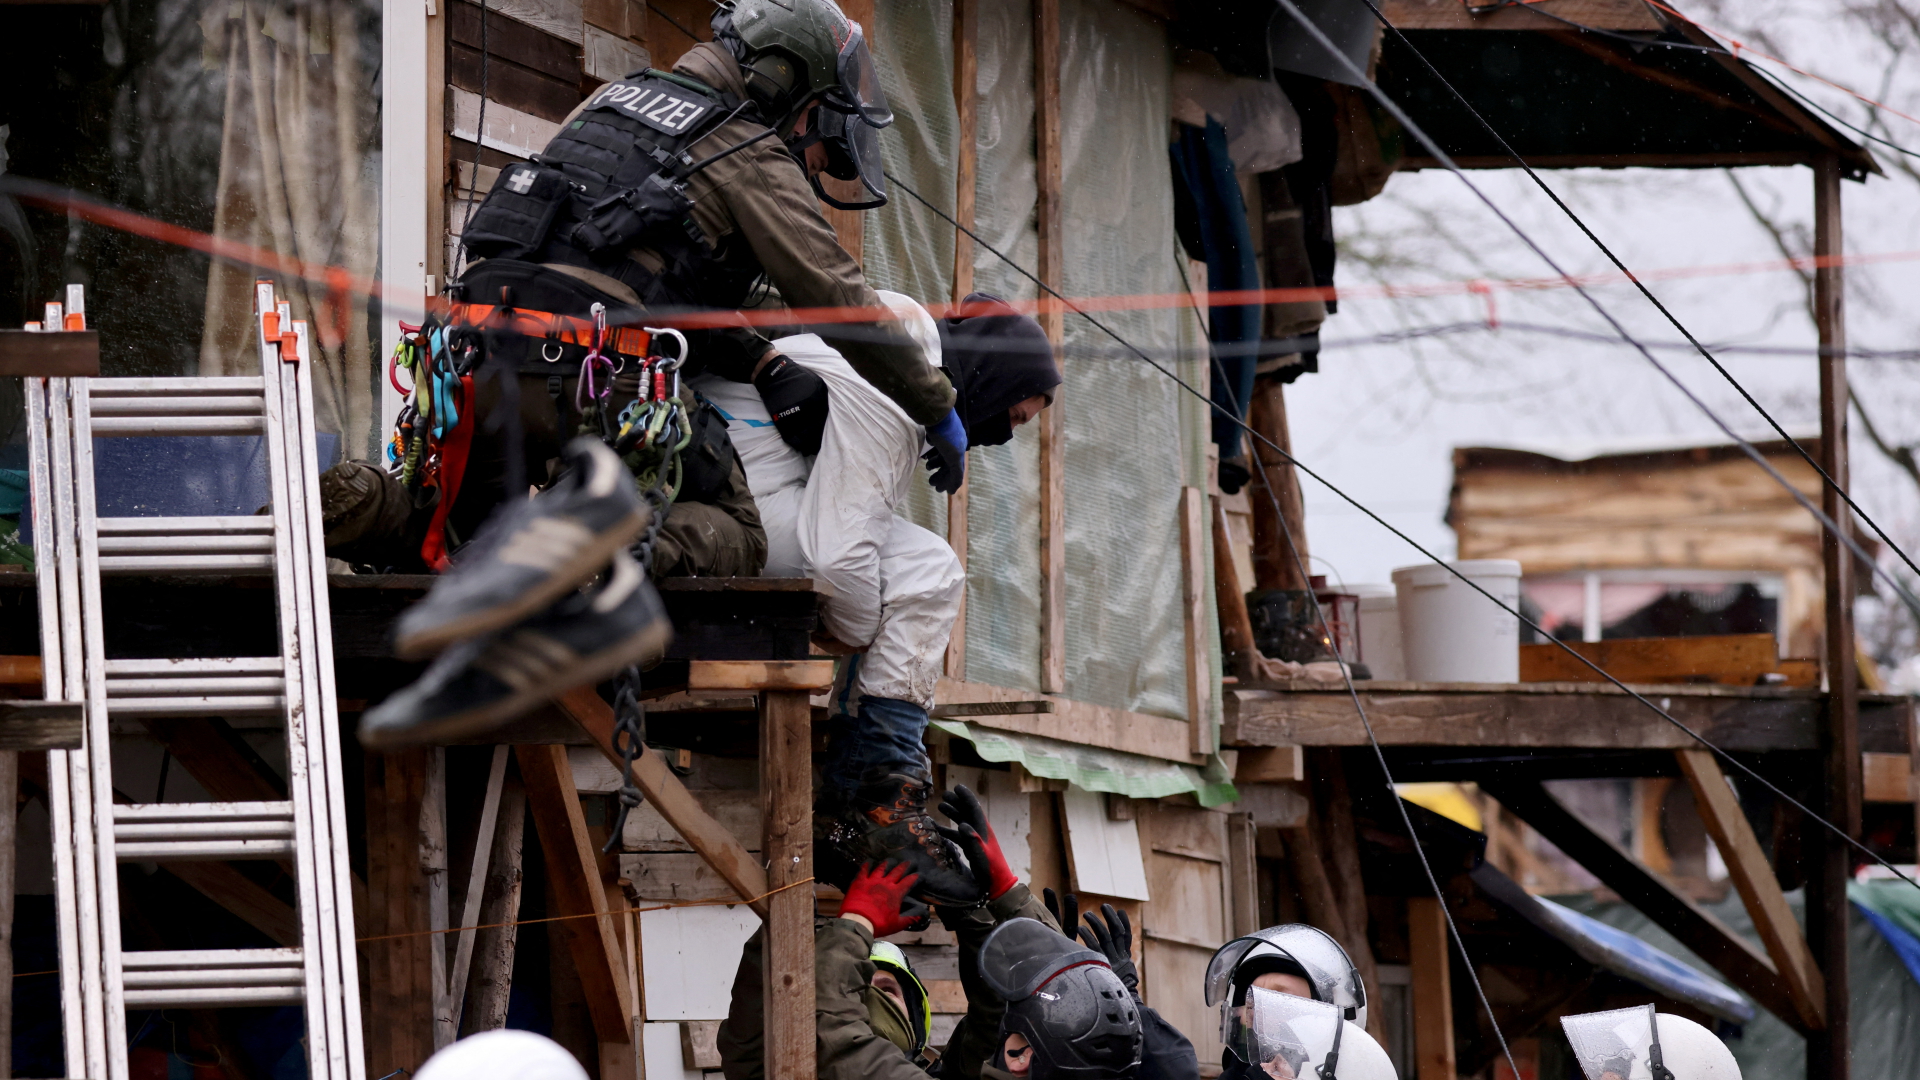 Polizisten räumen im von Klimaaktivisten besetzten Braunkohleort Lützerath ein Gebäude. | REUTERS